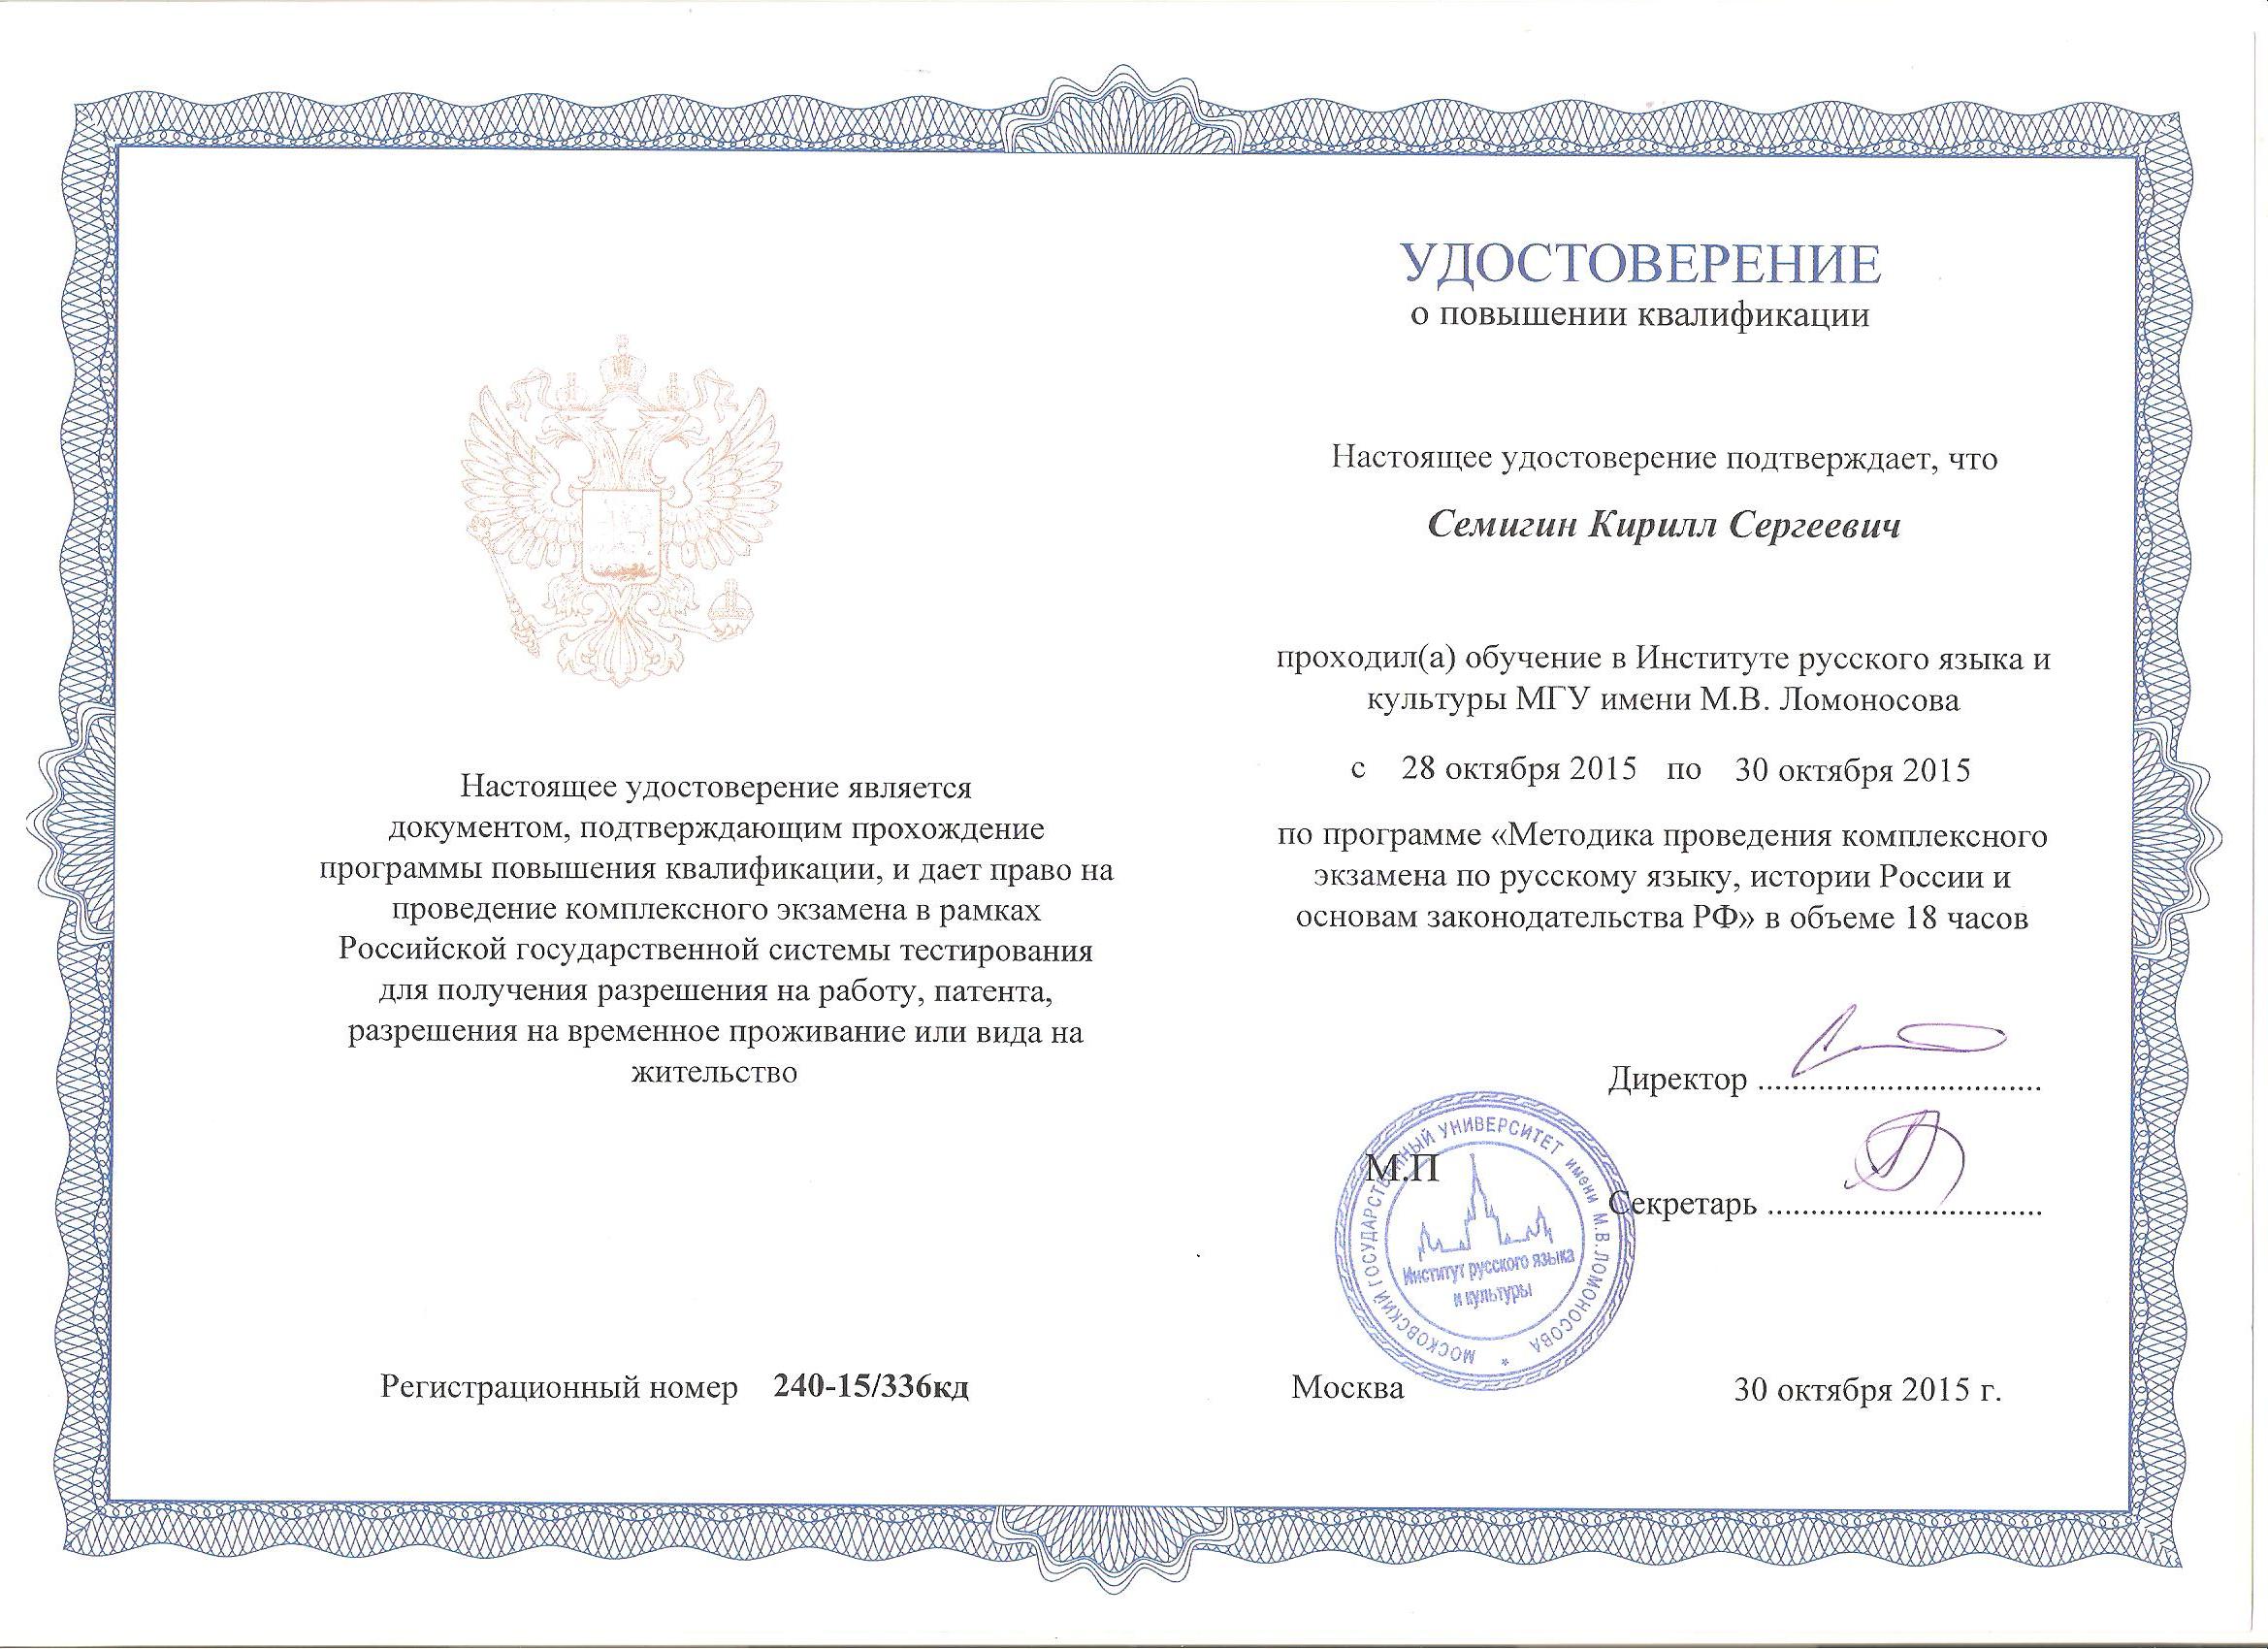 Мгу сертификат. Сертификат МГУ Ломоносова.